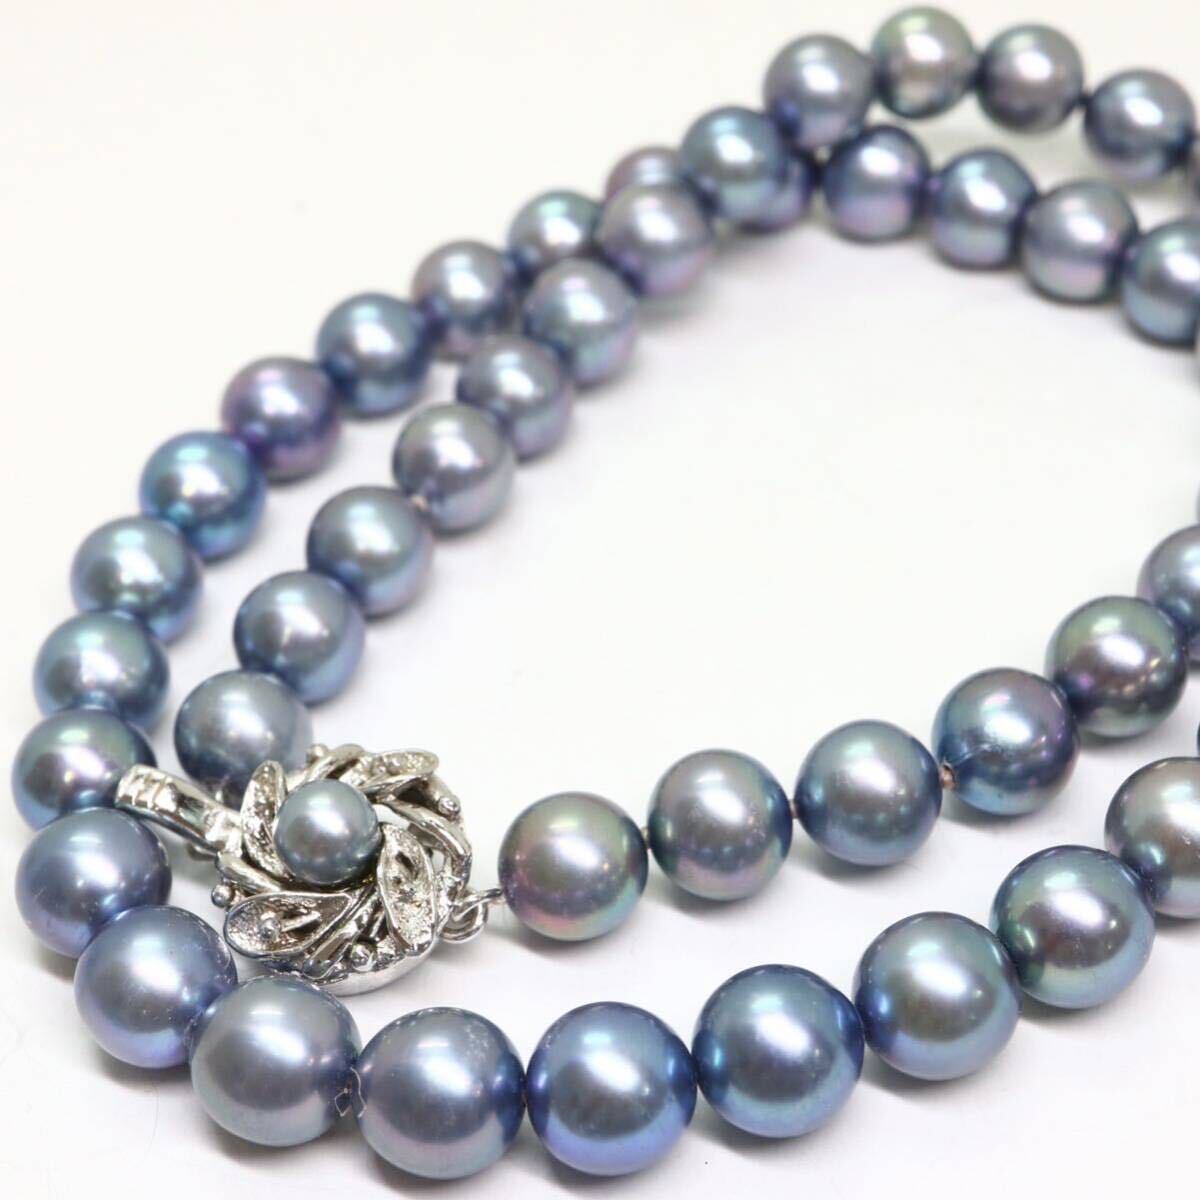 《アコヤ本真珠ネックレス》A 約7.5-8.0mm珠 36.5g 約41cm pearl necklace ジュエリー jewelry DH0/DH0の画像1